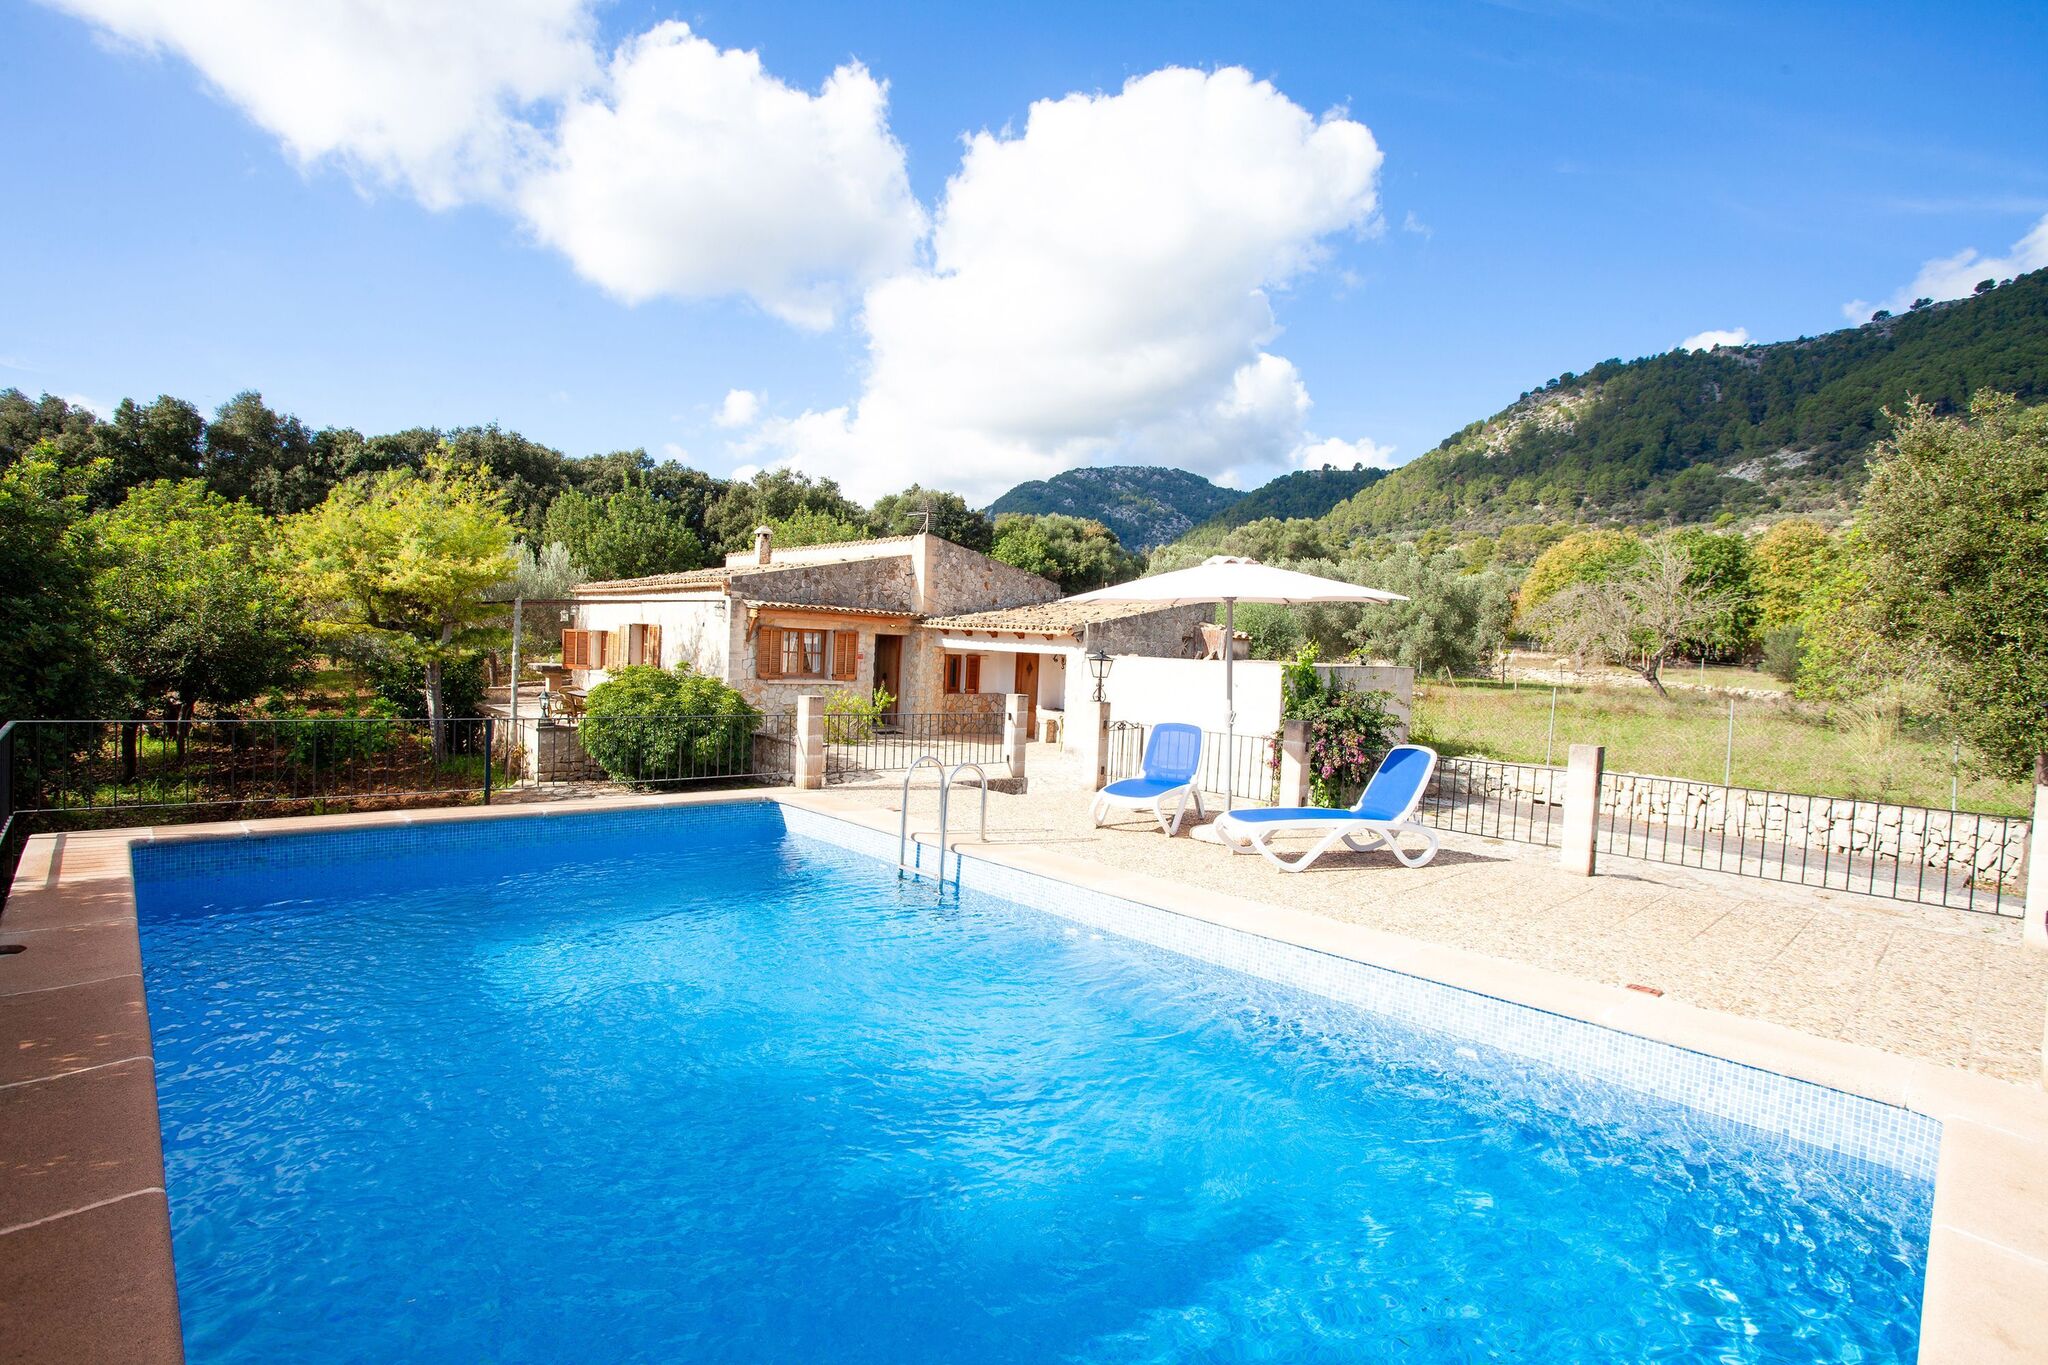 Vakantiehuis met privézwembad in de uitlopers van de Campanet-vallei